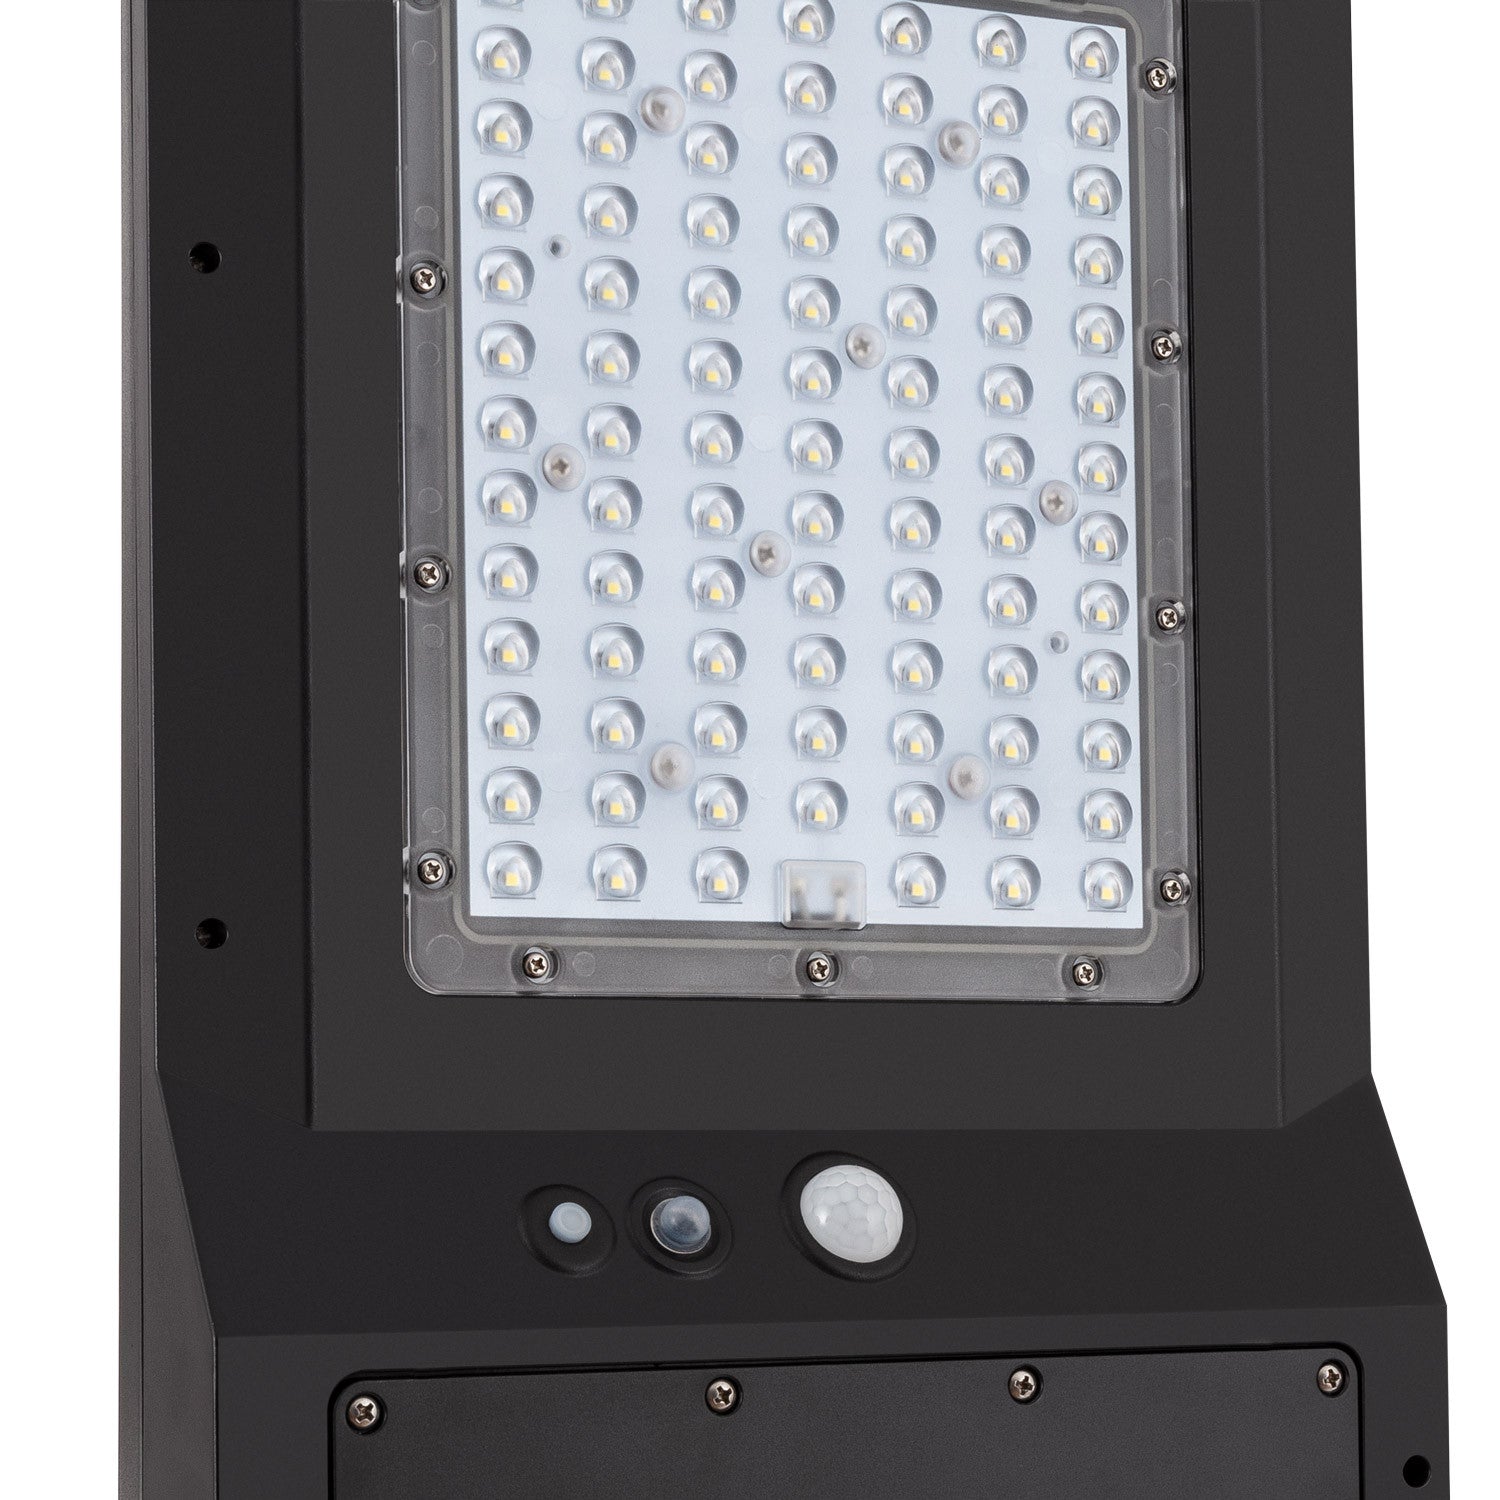 45W Solar LED Street Light & Lighting Column Packages